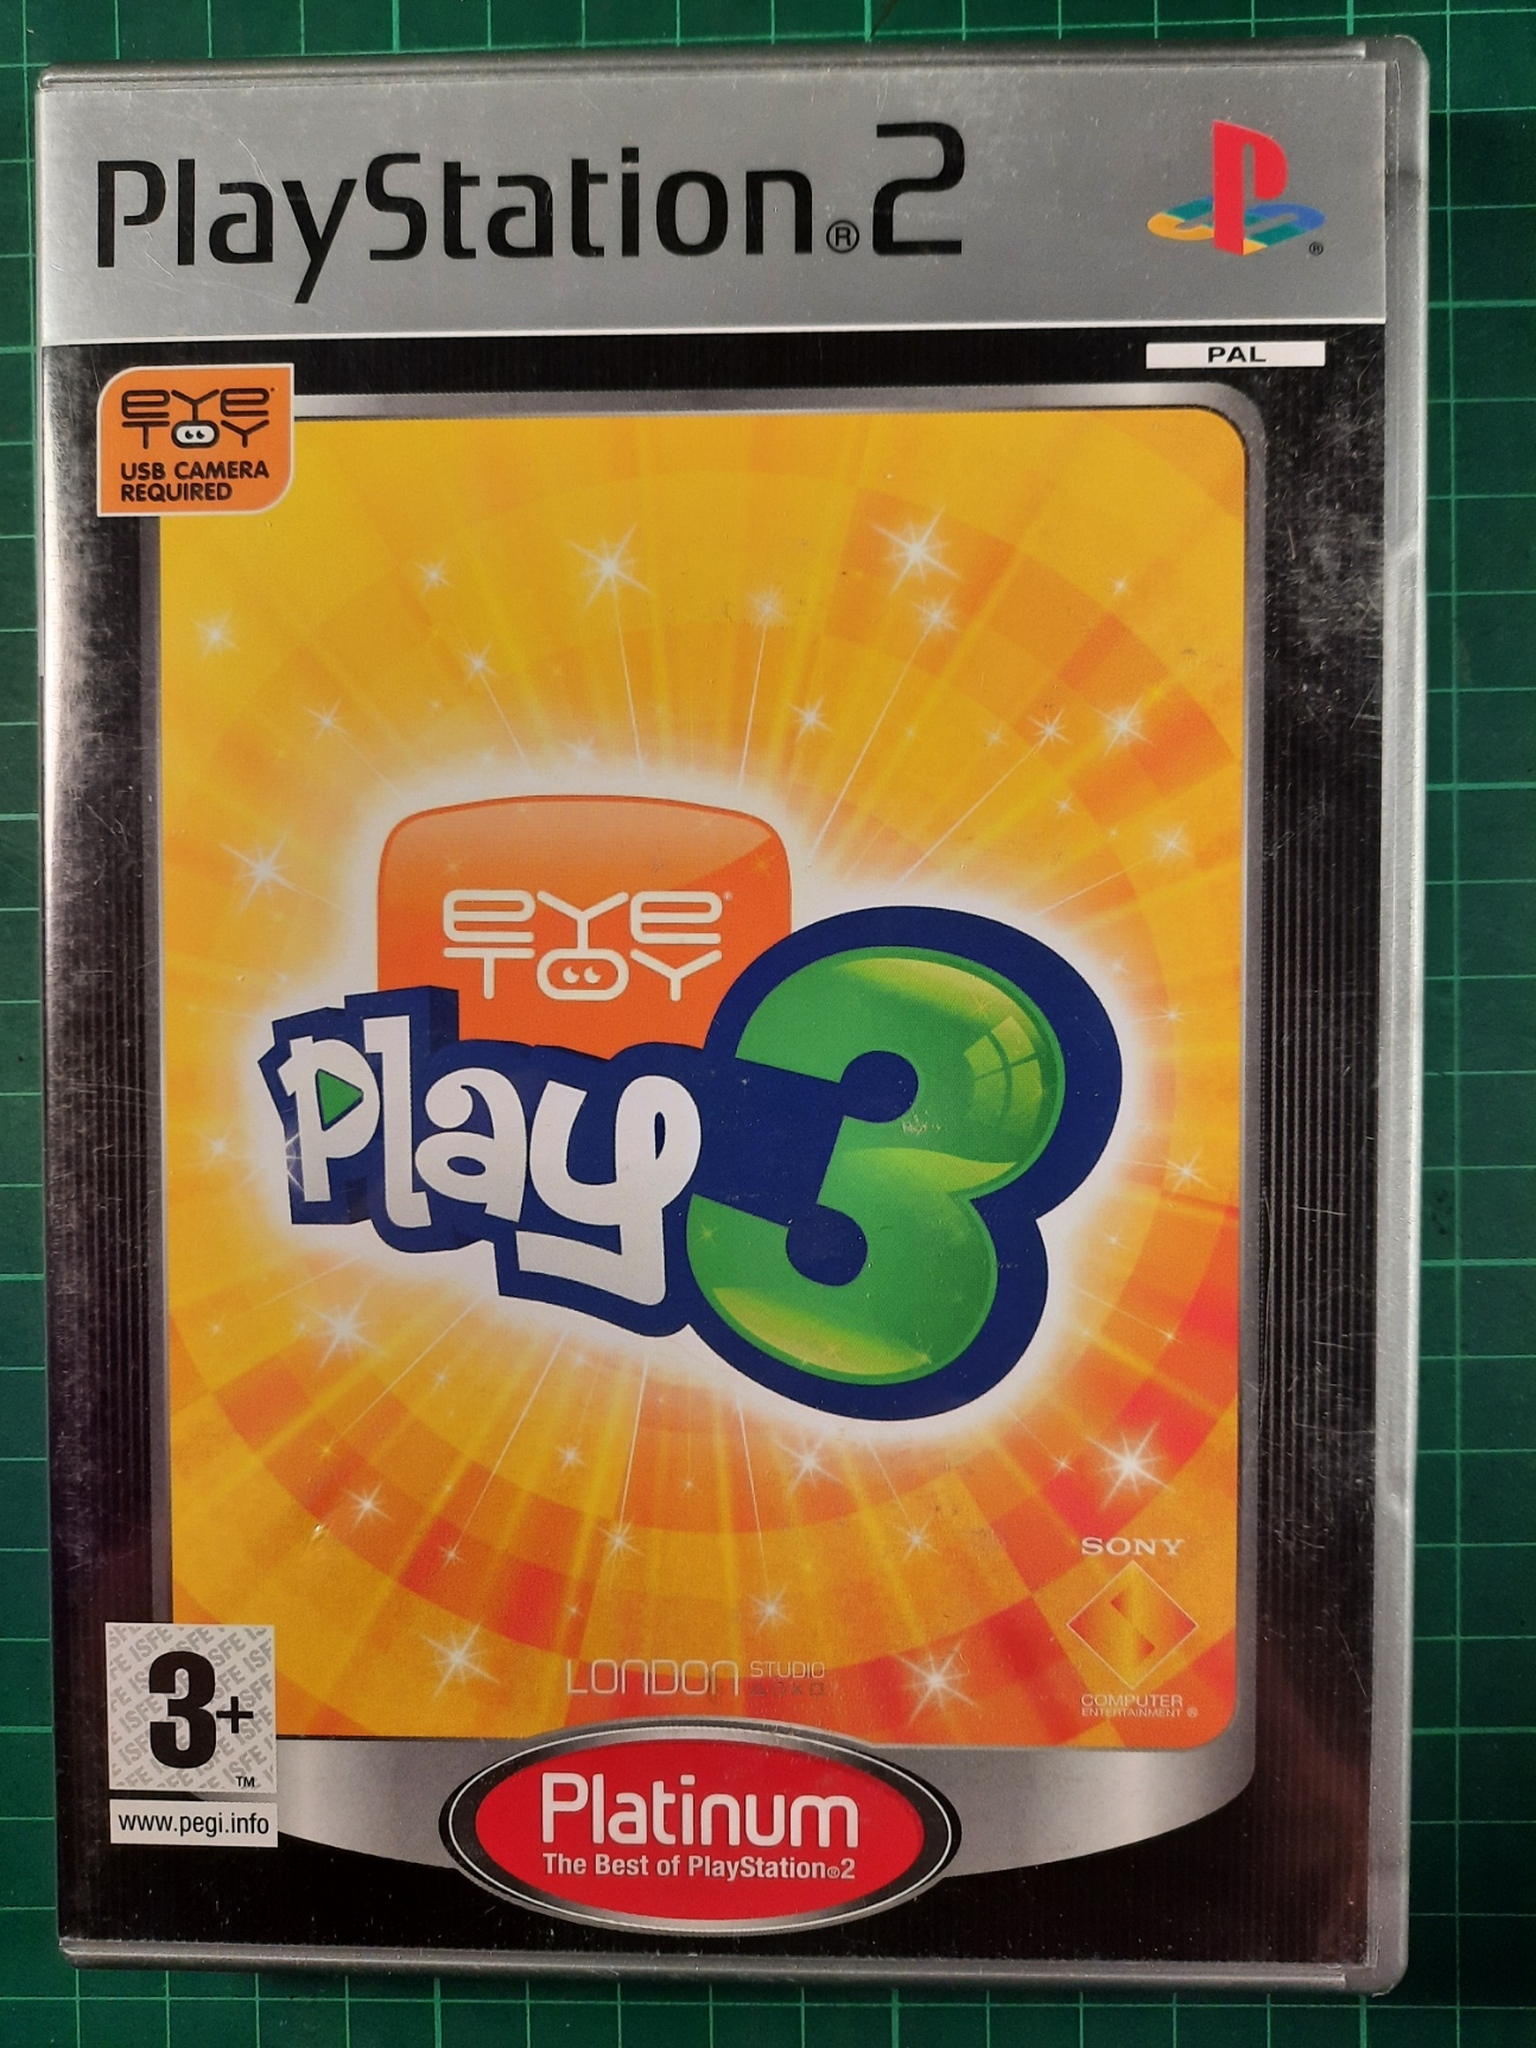 Playstation 2 : Eye toy play 3 (Platinum utgave)